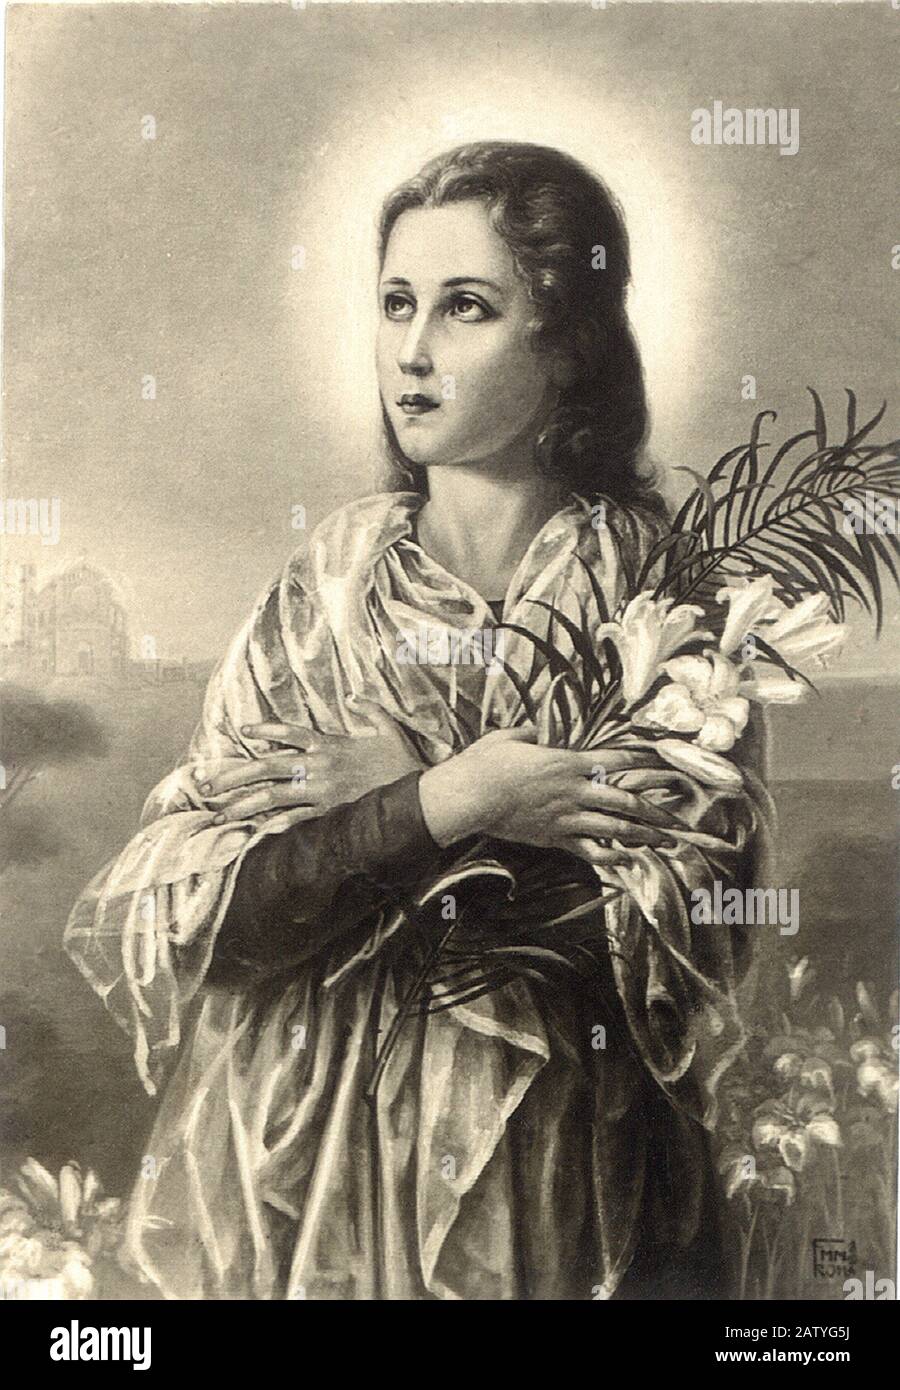 Die heilige MARIA GORETTI ( Corinaldo , Ancona 1890 - Nettuno Roma 1902 ) wurde 1950 heiliggesprochen ( in diesem Bild ein heiliges Volksbild Italien arou Stockfoto